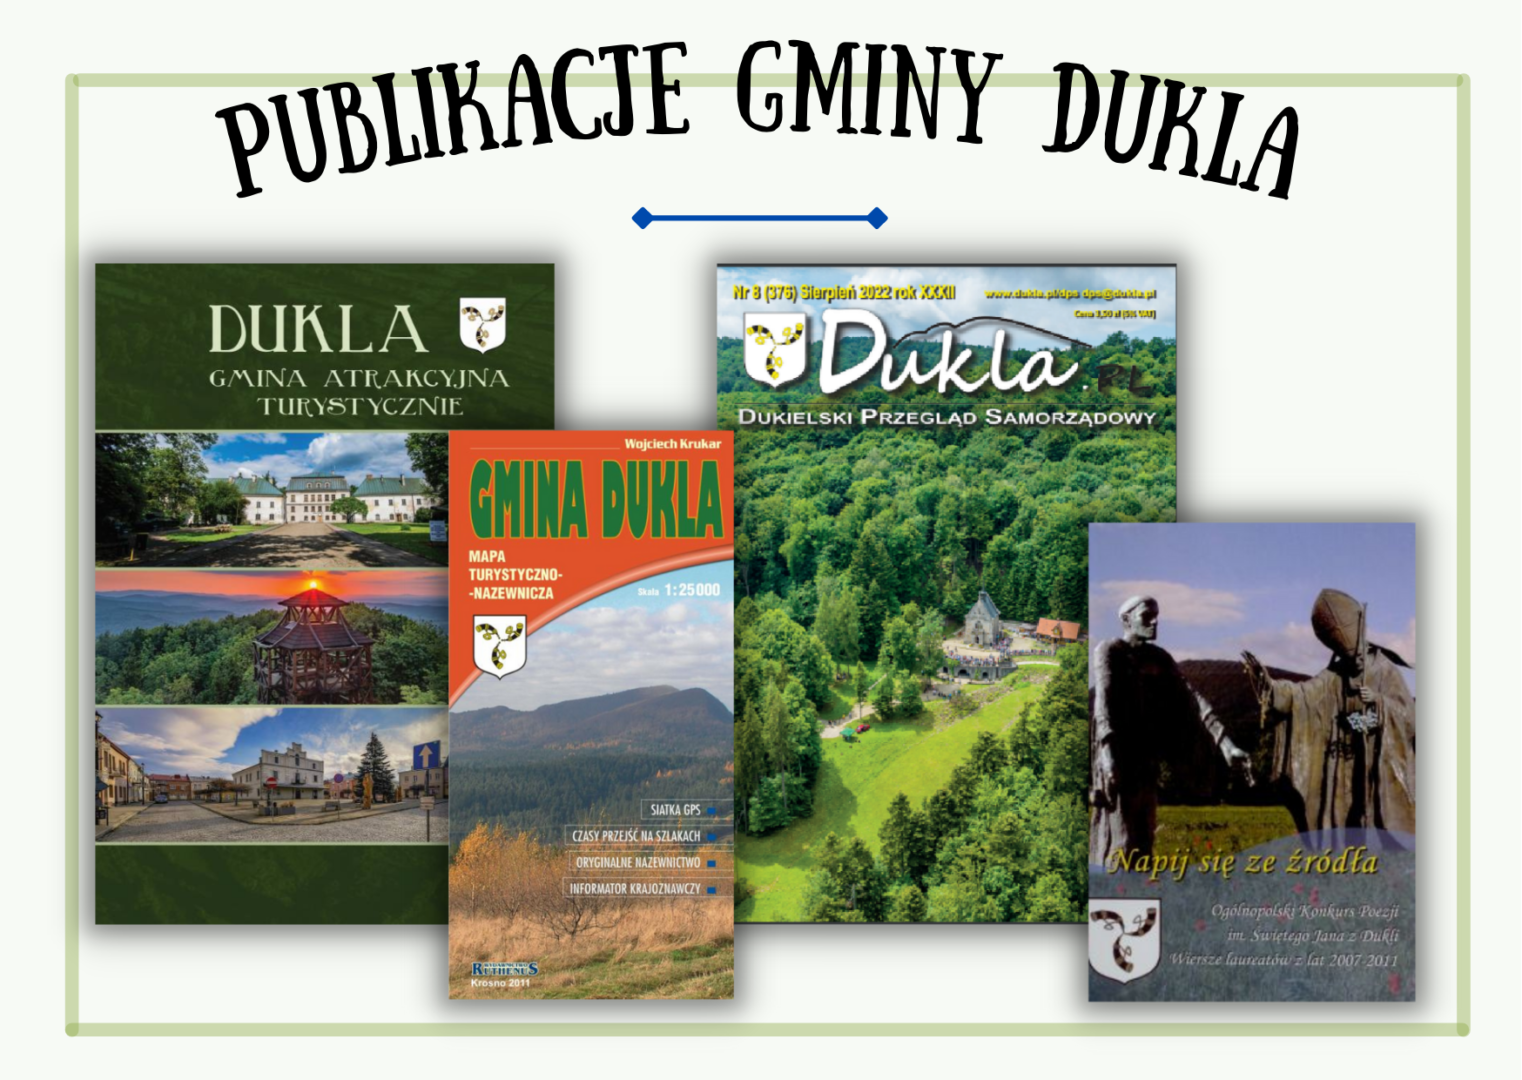 Plakat przedstawia publikacje gminy Dukla (album, książki, tomiki poezji, mapa)